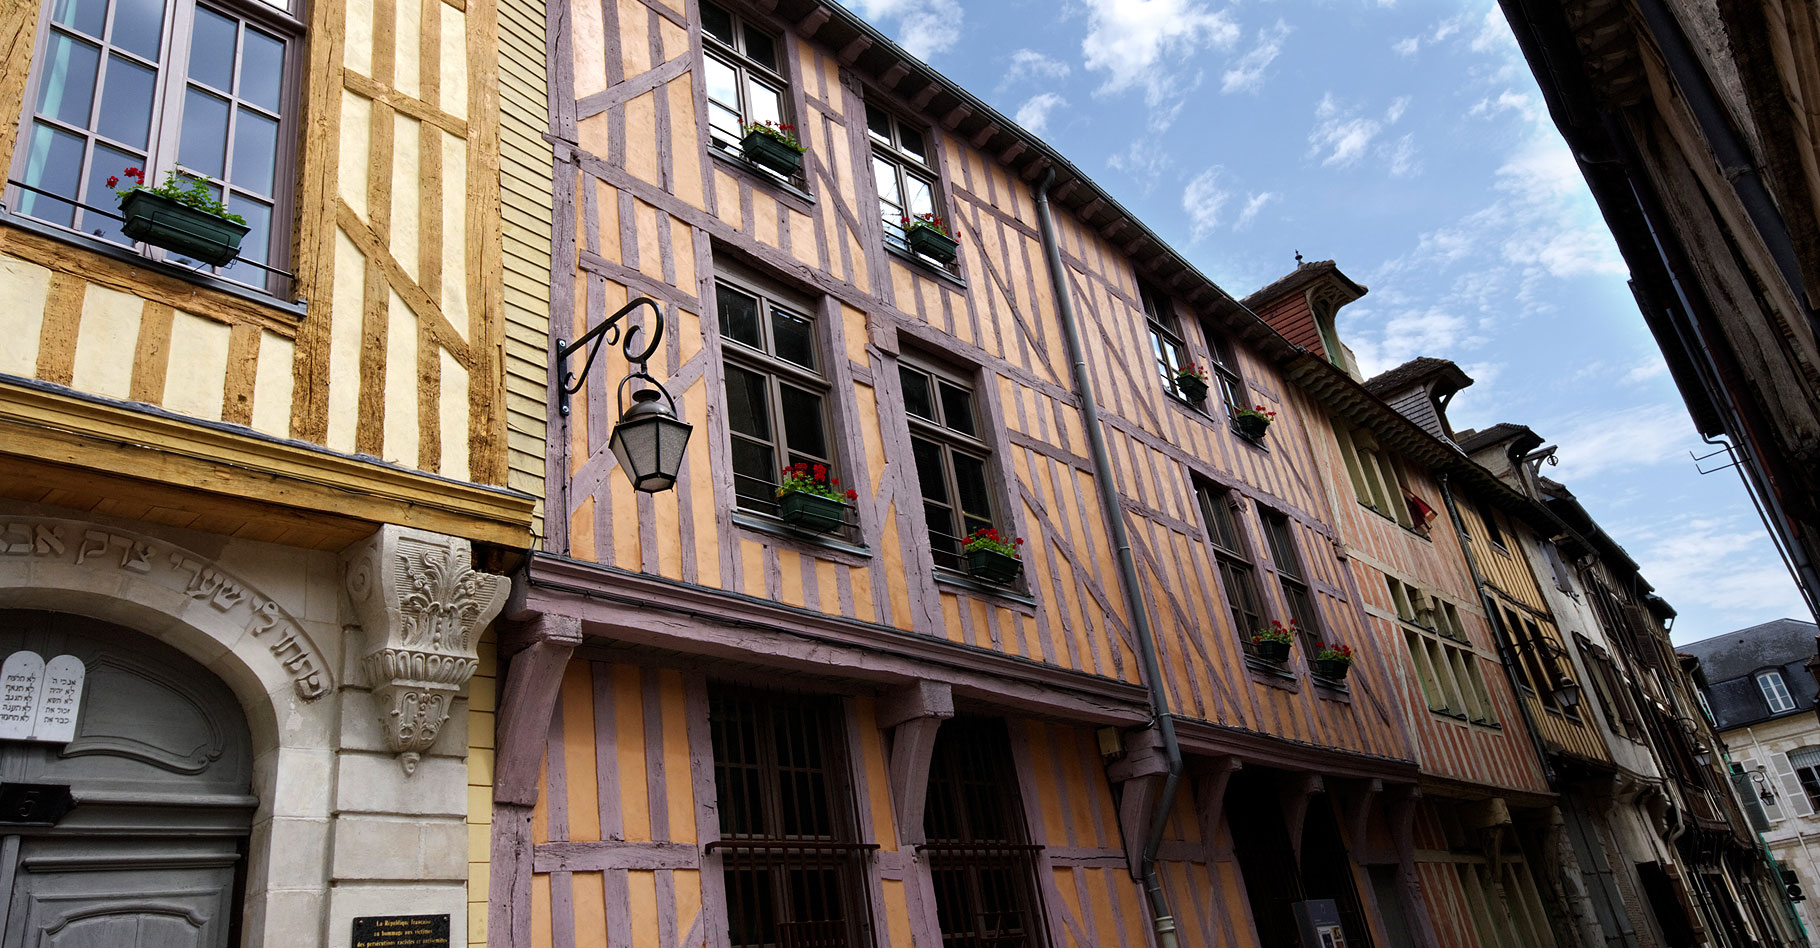 Maisons anciennes de Troyes. © Emmanuel Dyan, Flickr, CC by-nc 2.0